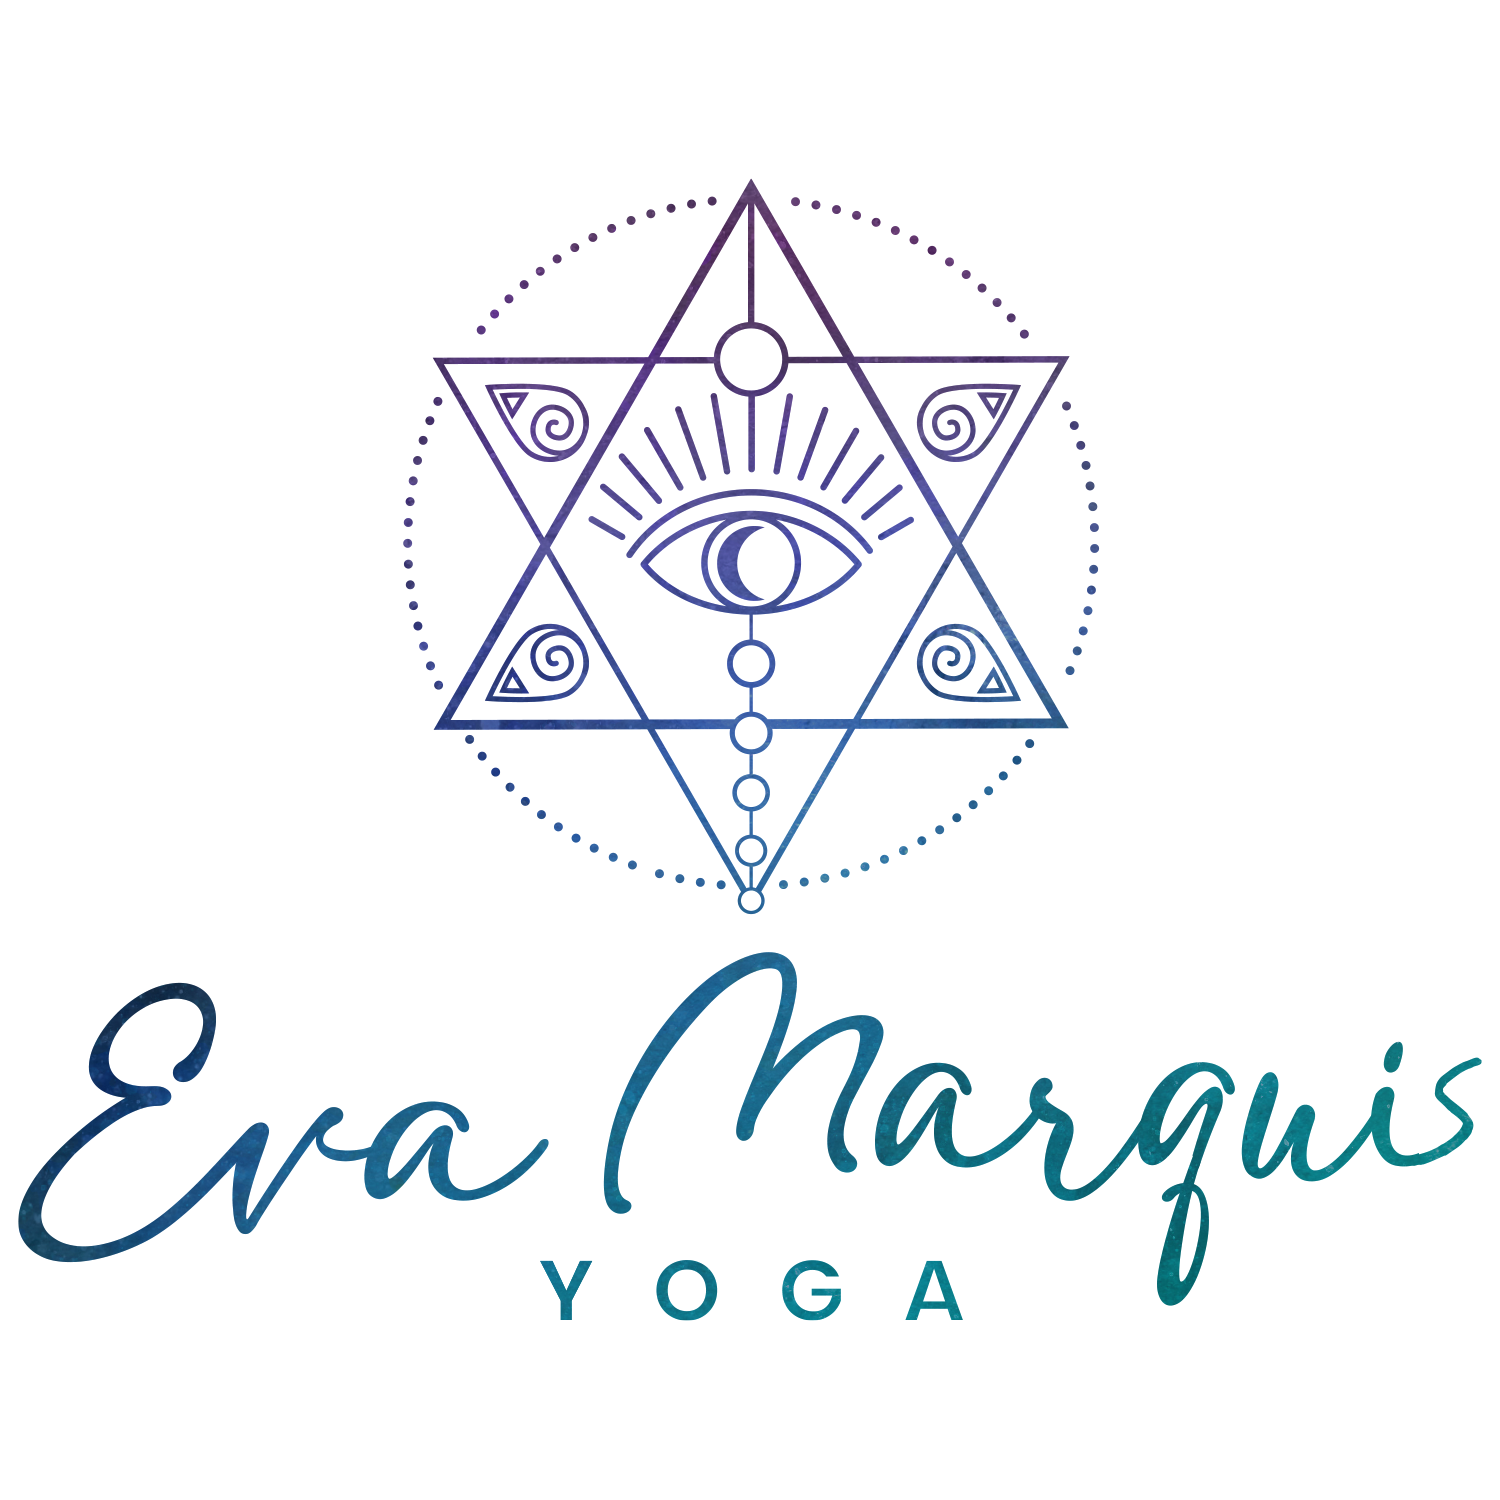 Eva marquis yoga